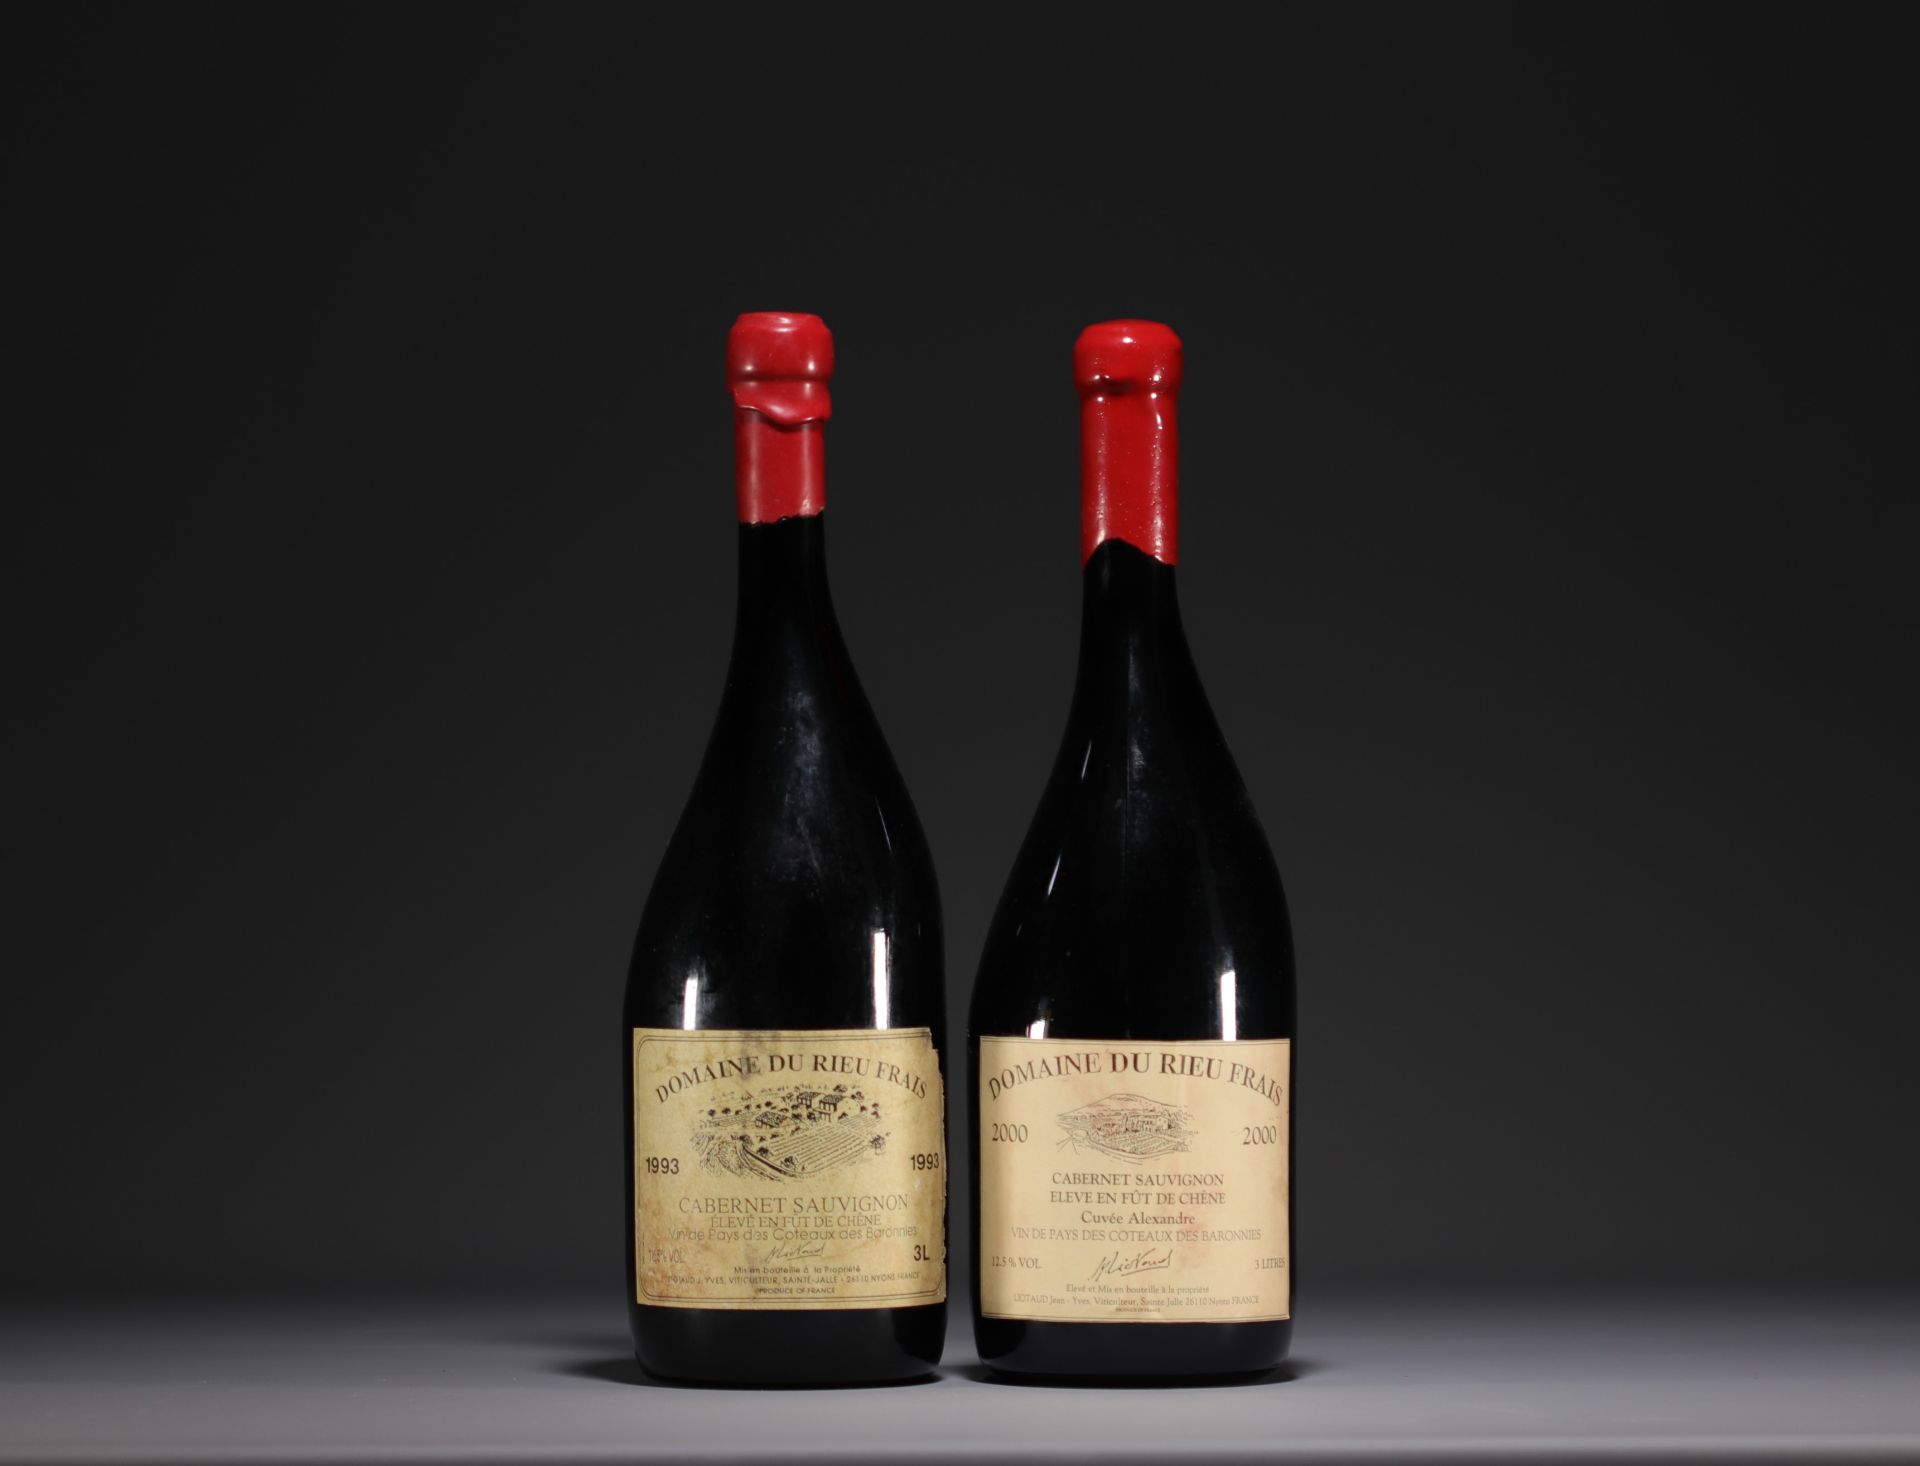 Domaine du Rieu Frais, Cabernet Sauvignon, set of two Jeroboams vintage 1993 and 2000.